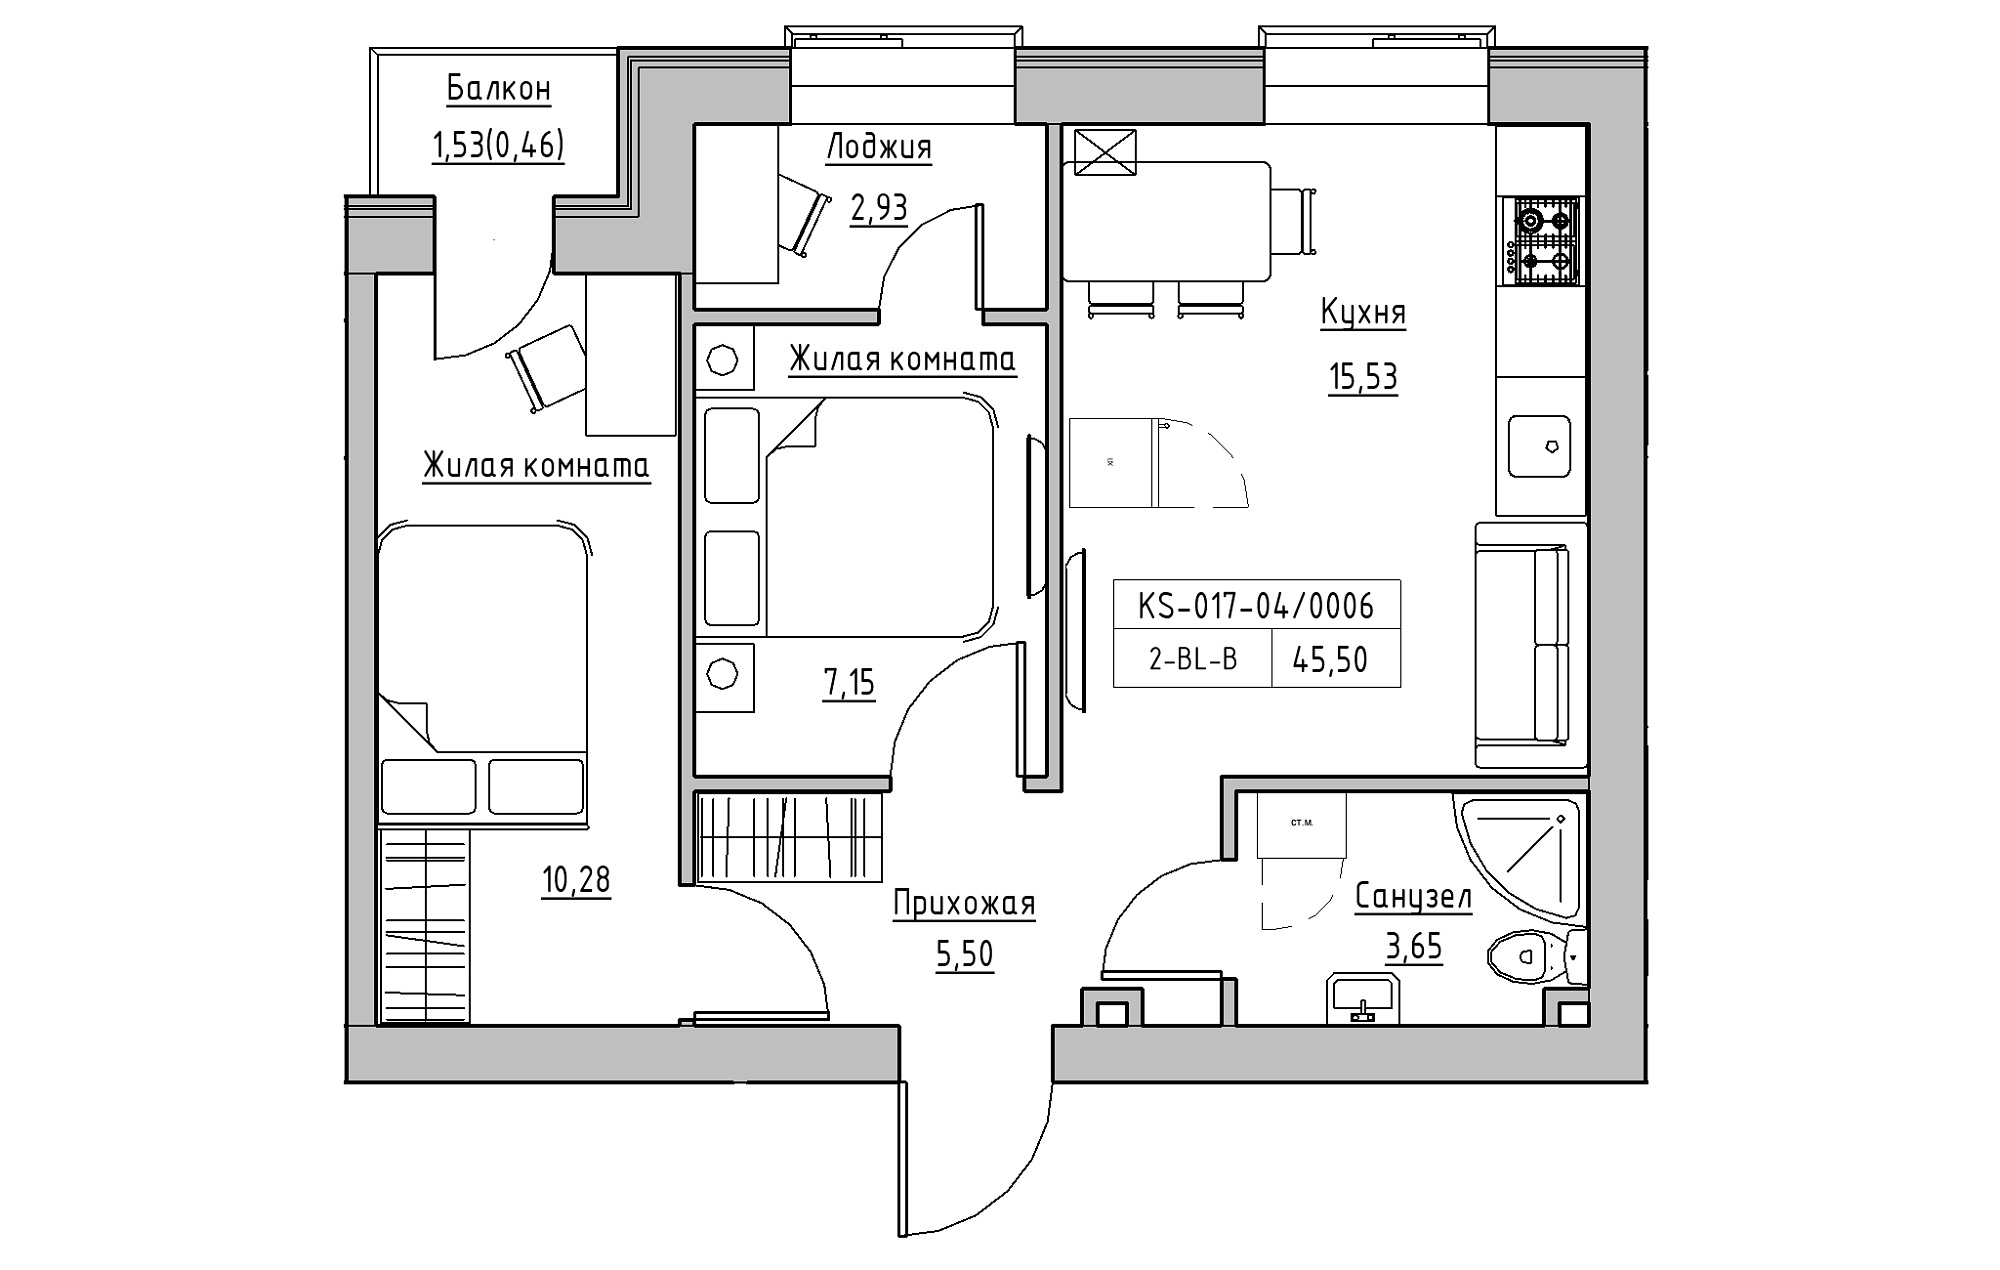 Планировка 2-к квартира площей 45.5м2, KS-017-04/0006.